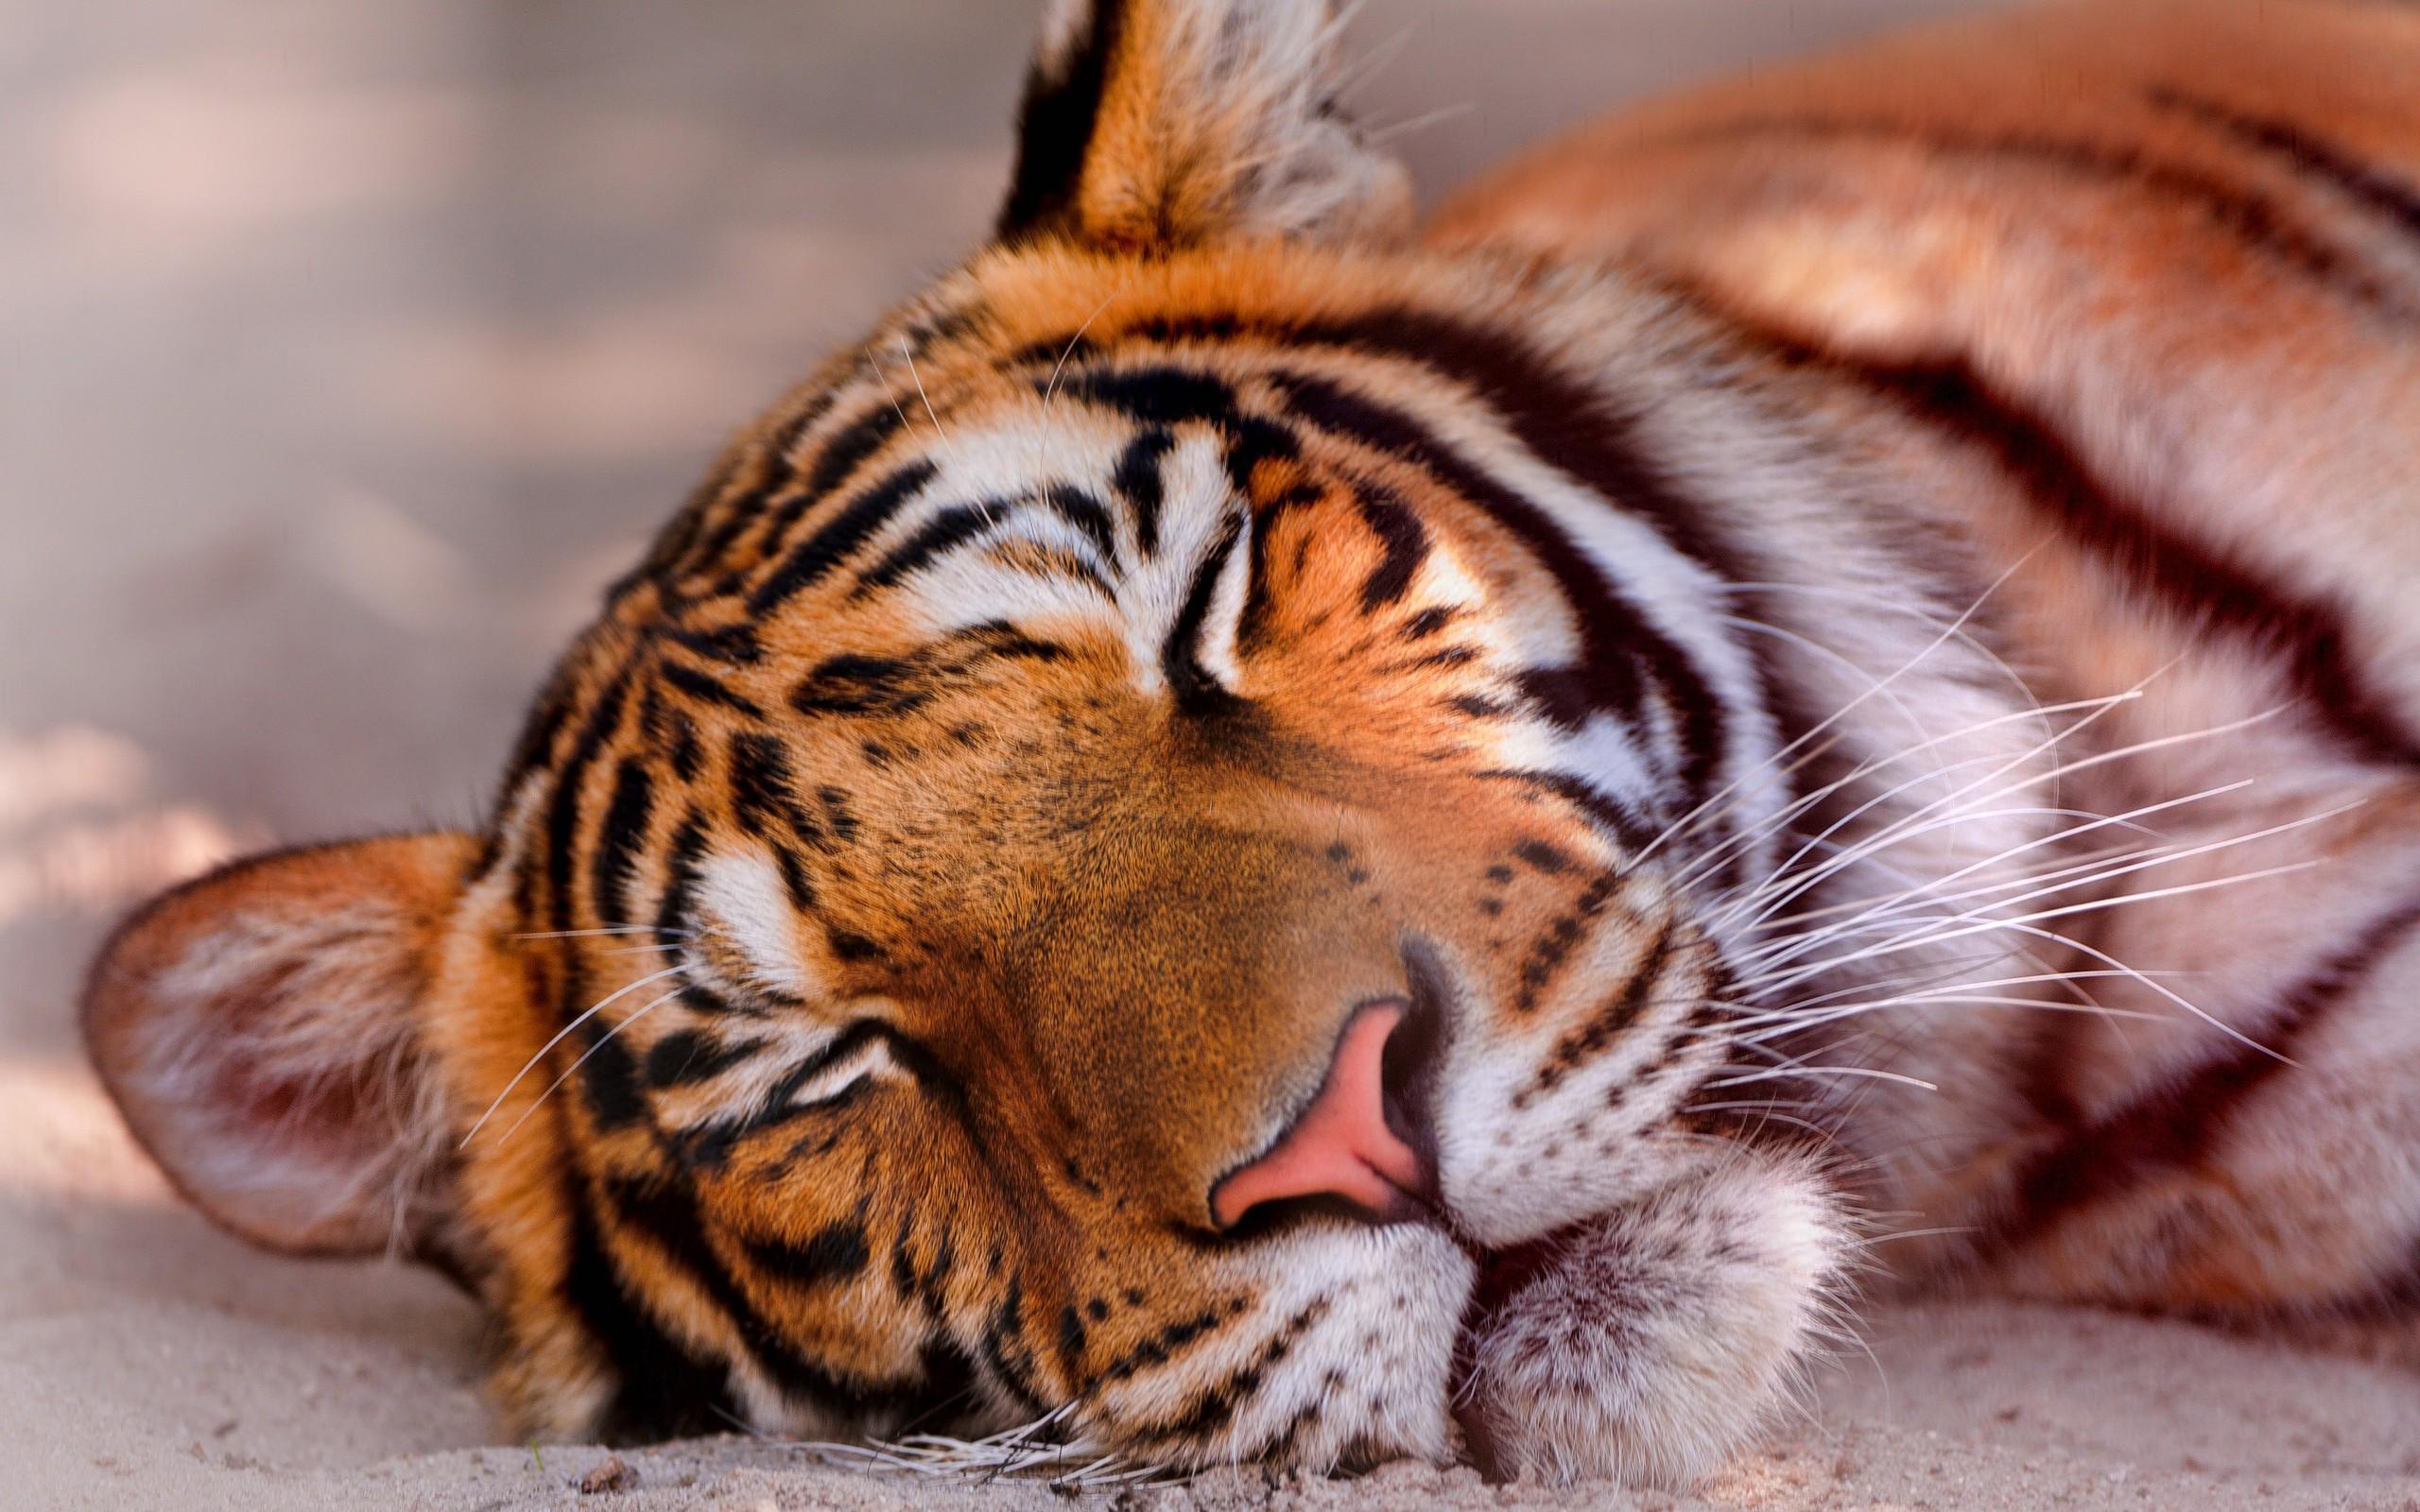 Sleeping Tiger HD desktop wallpaper : Widescreen : High Definition ...